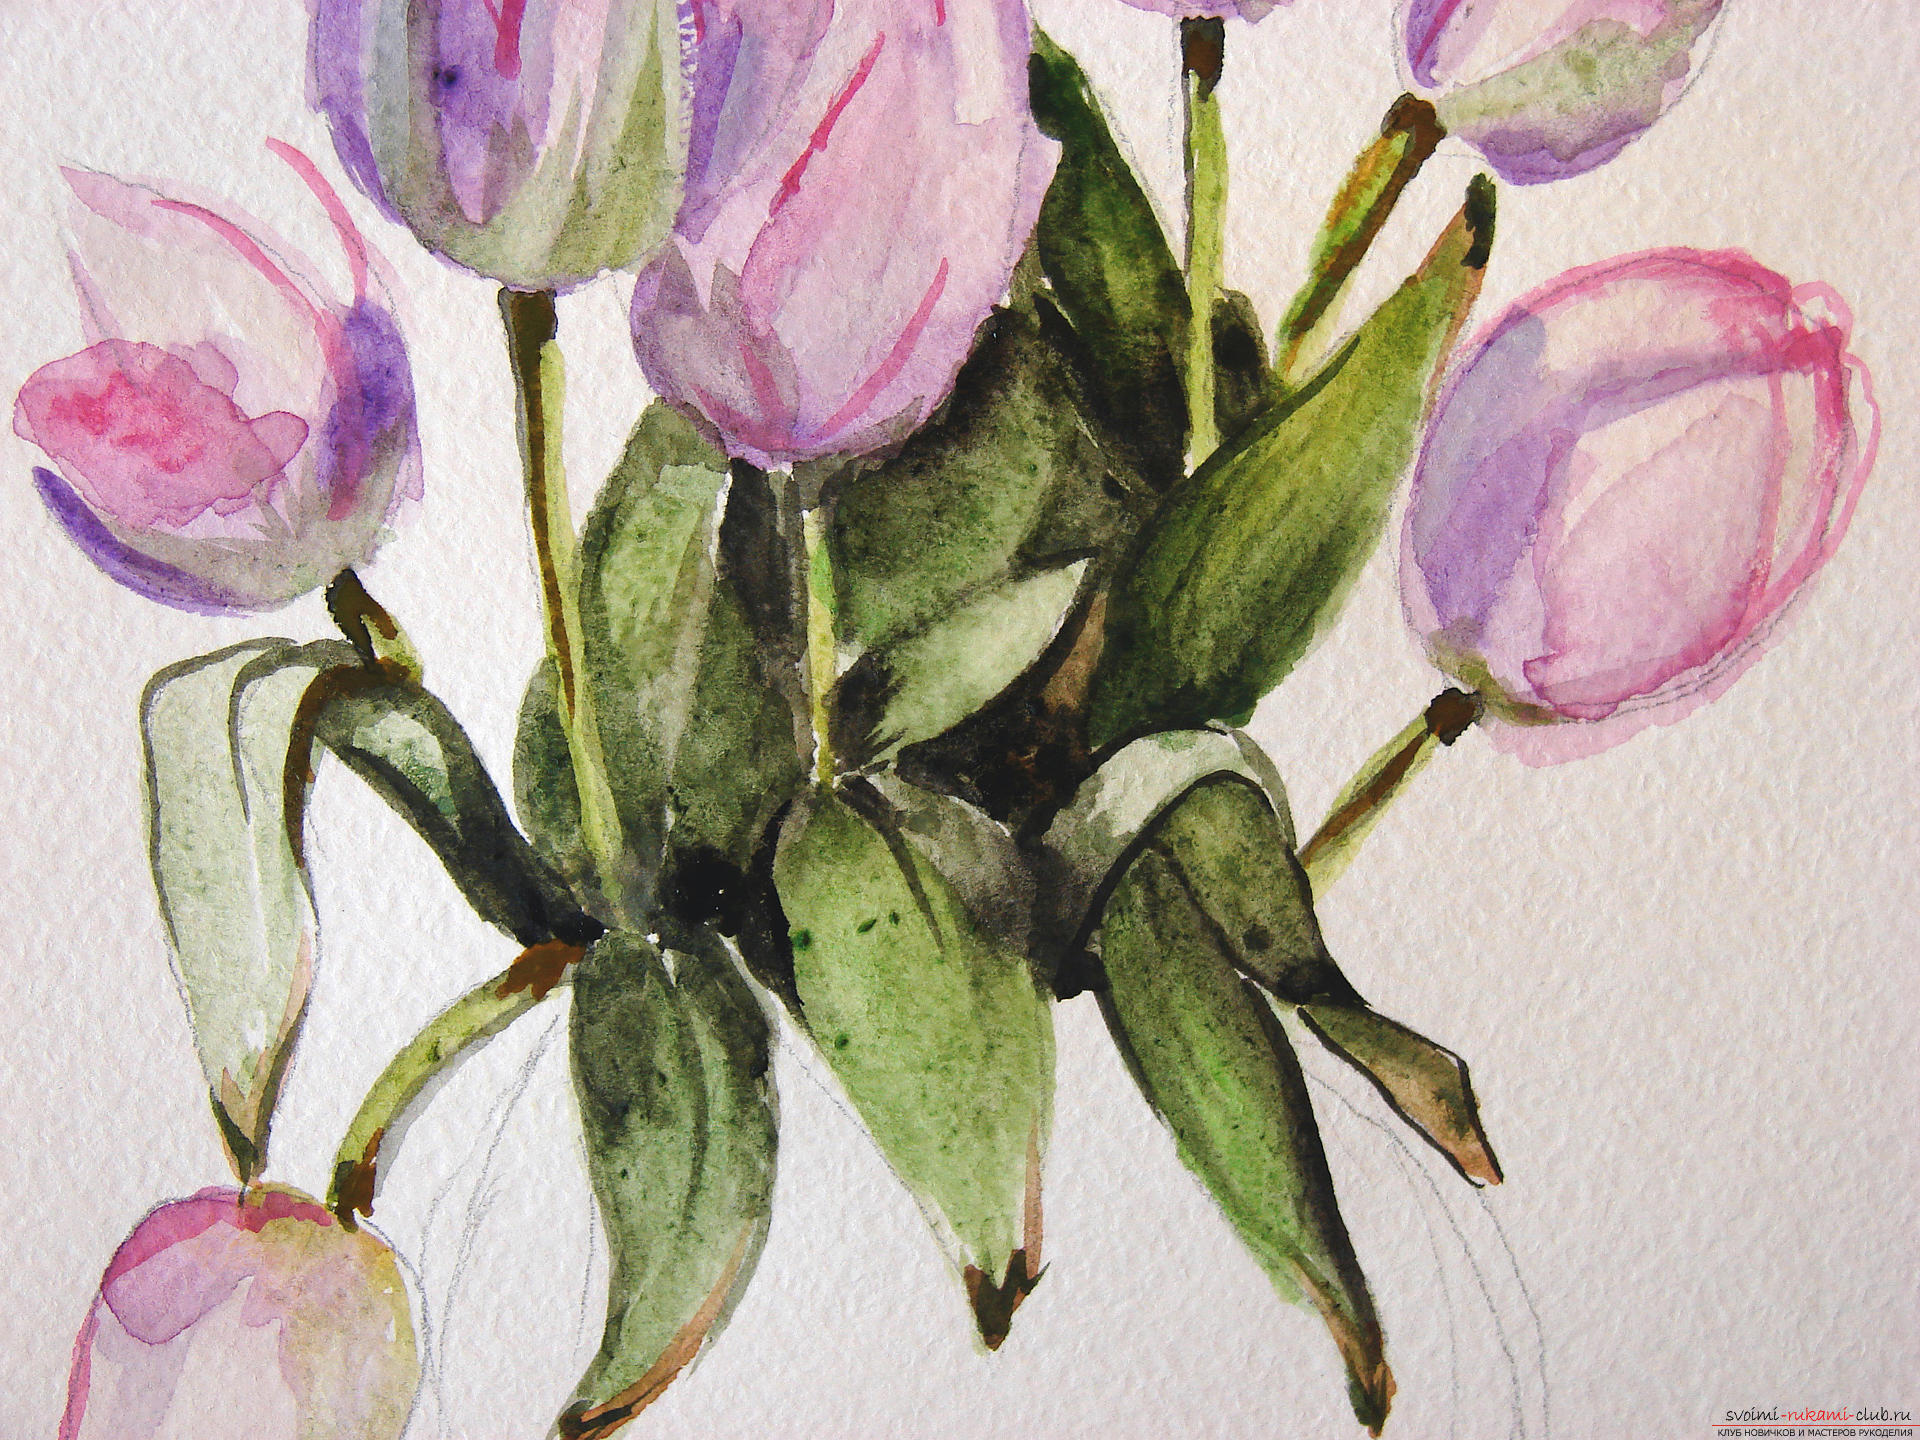 Мастер-класс по рисованию с фото научит как нарисовать цветы, подробно описав как рисуются тюльпаны поэтапно.. Фото №16